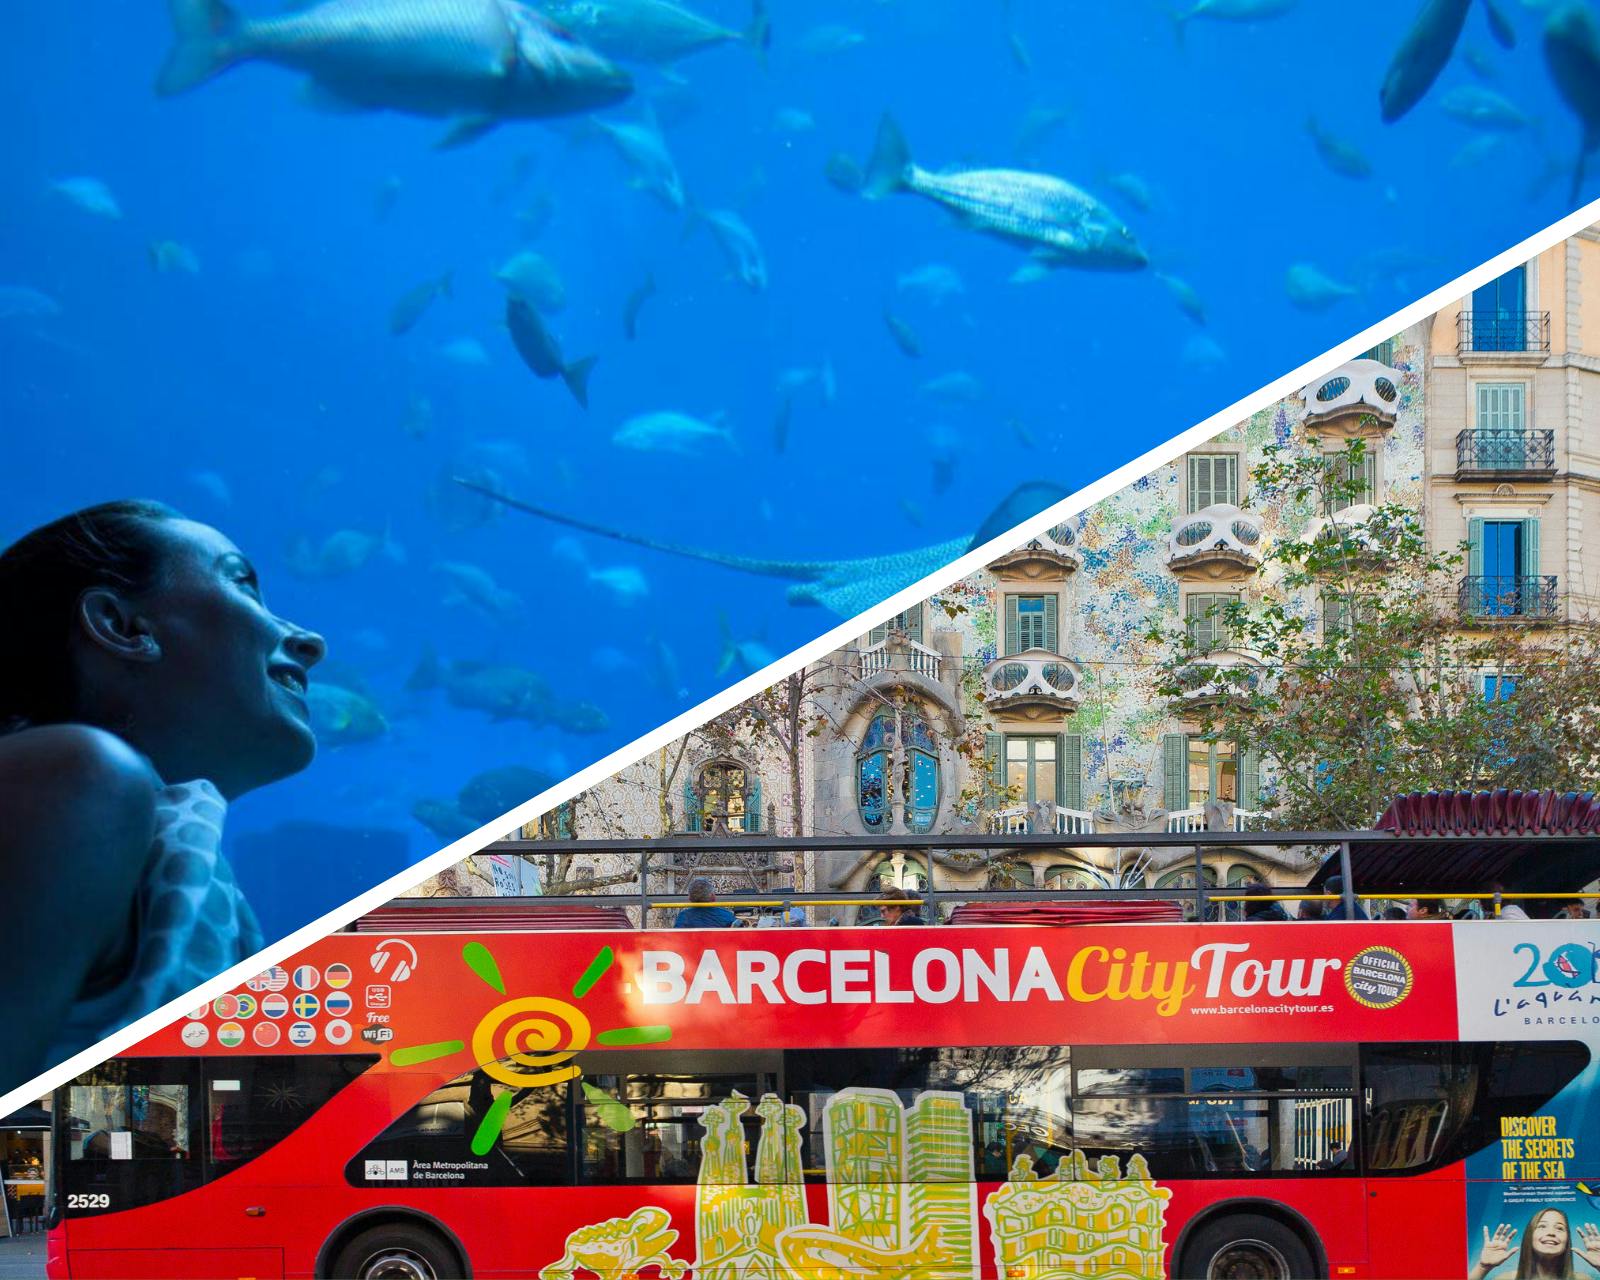 Barcelona city tour hop-on hop-off bus tickets with Aquarium